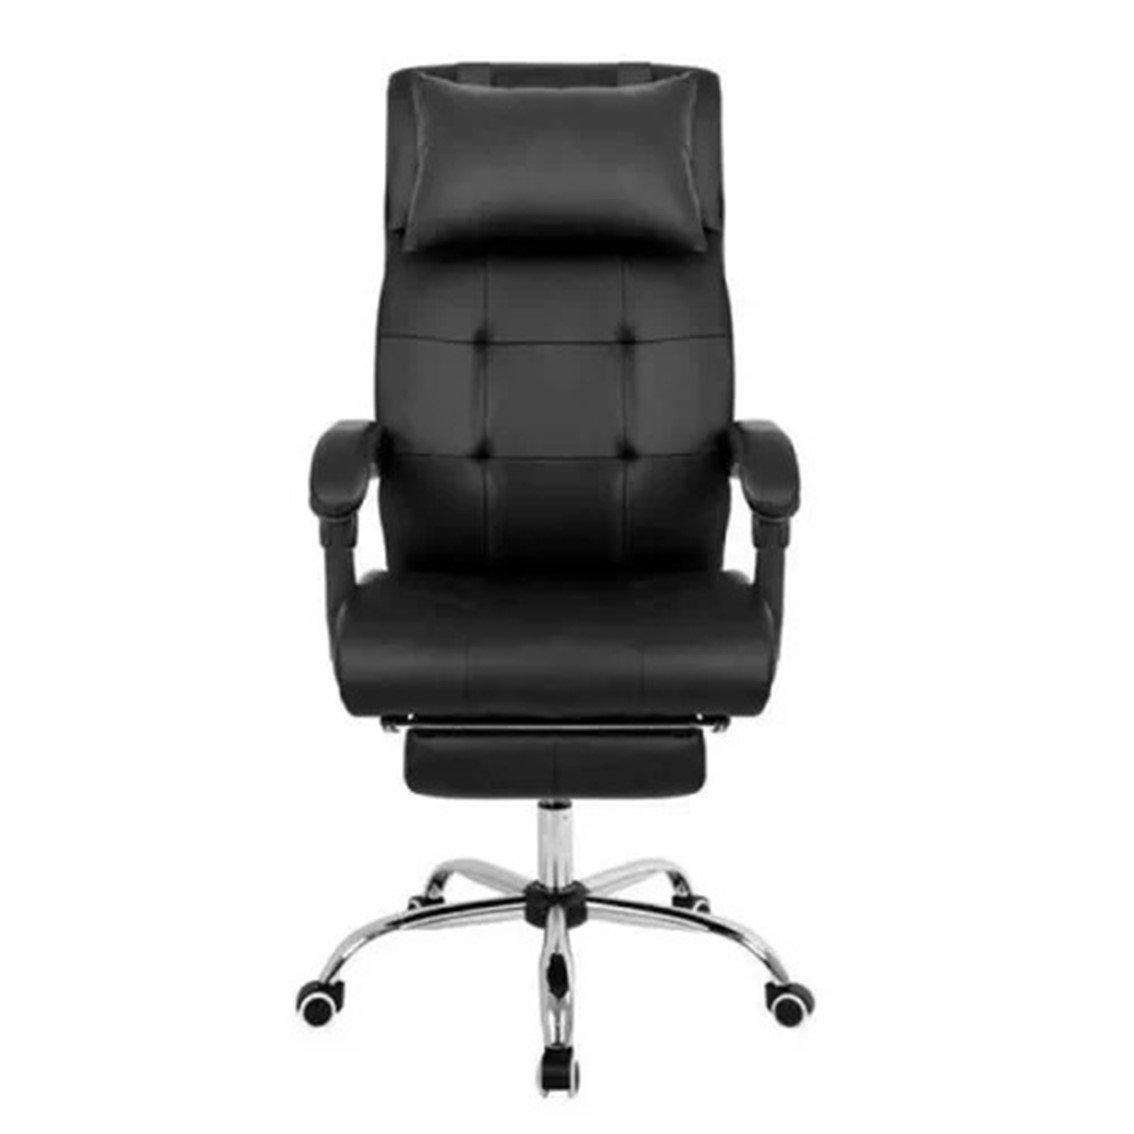 Cadeira Presidente Premium C300 com Regulagem e Apoio para Os Pés Rpc Preta - 2